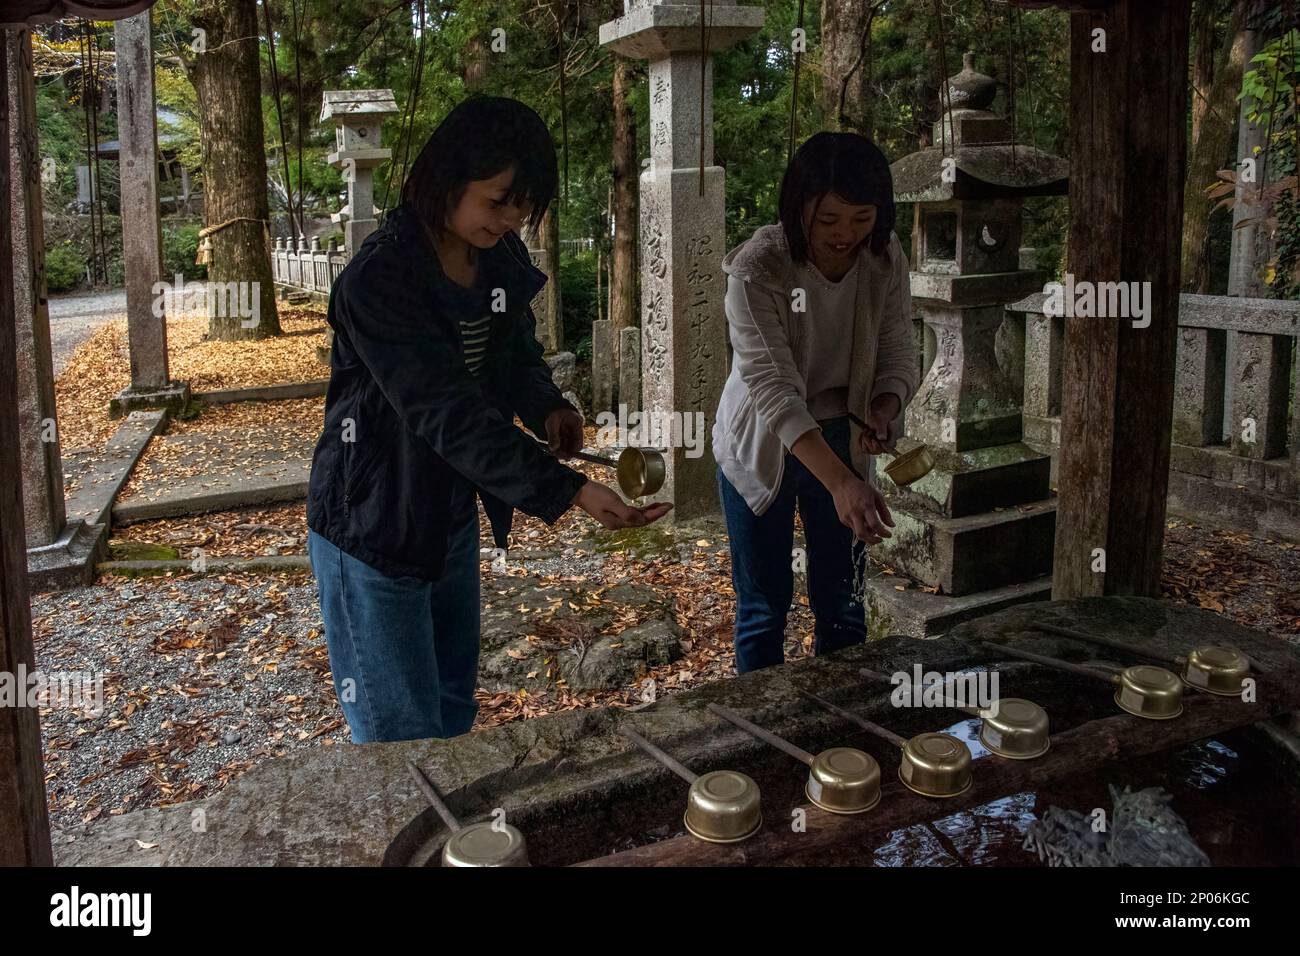 Des jeunes filles japonaises à la cérémonie de purification rituelle de temizuya, au sanctuaire de Kamiichinomiya Oawa, à Kamiyama, île de Shikoku, au Japon Banque D'Images